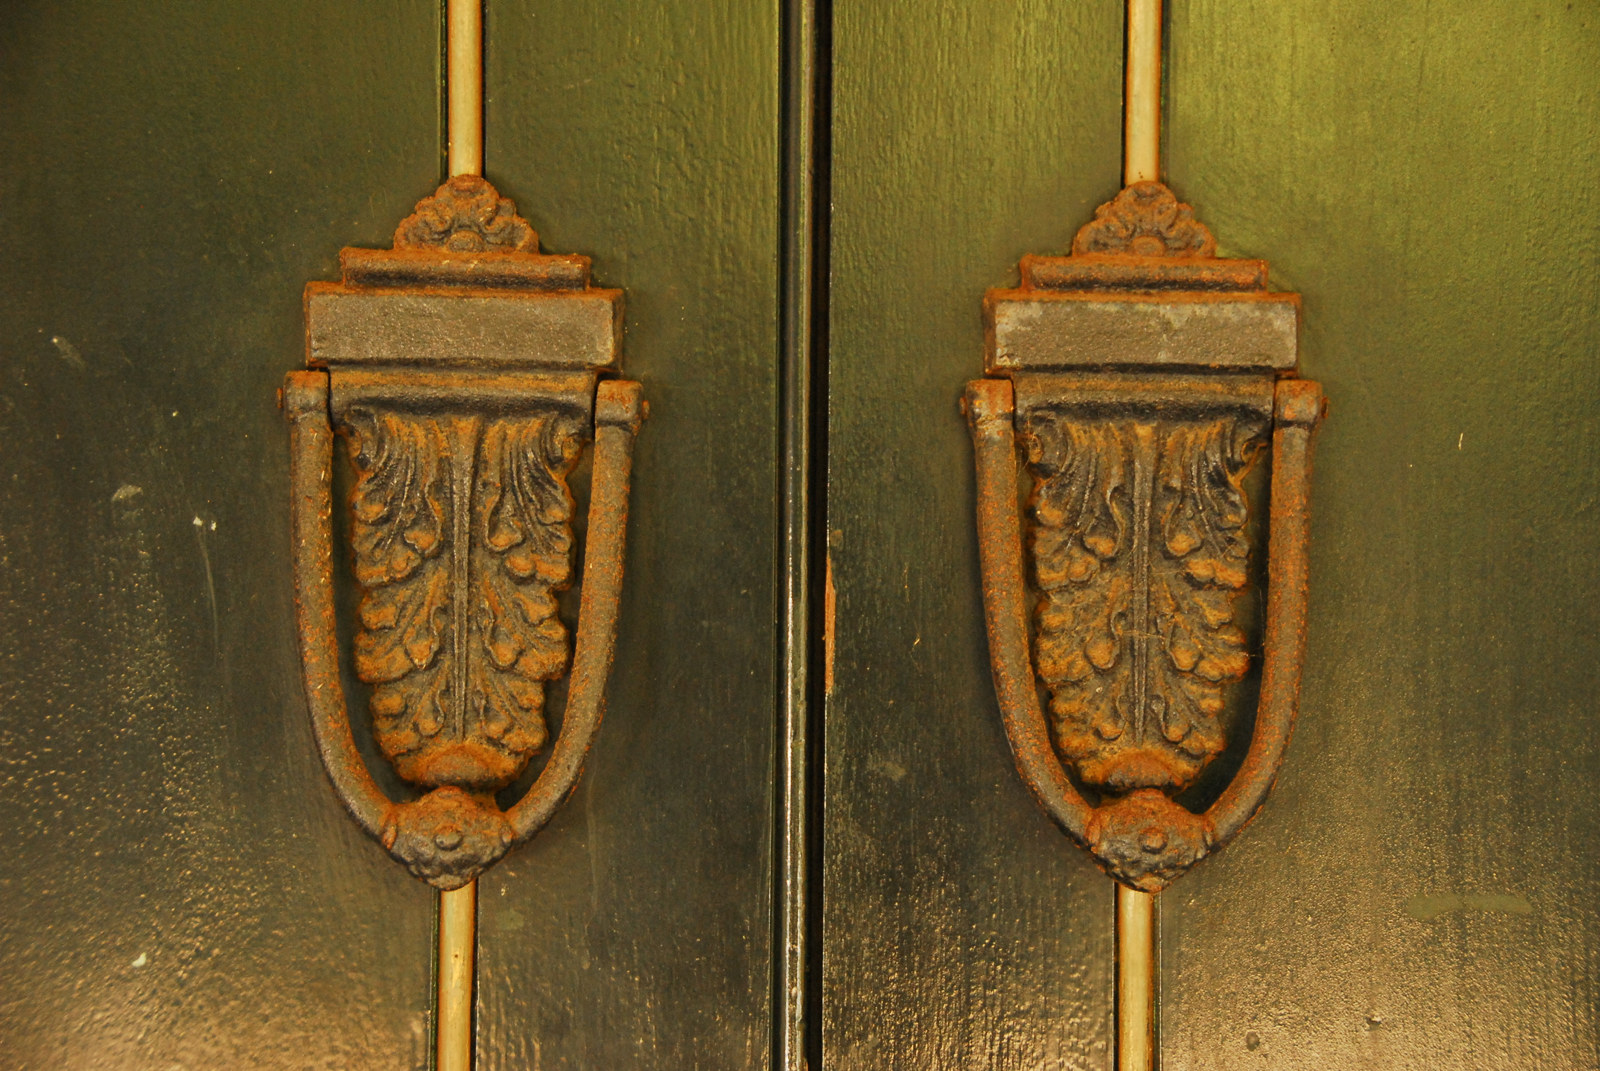 Twin door knockers on wooden door, closeup.